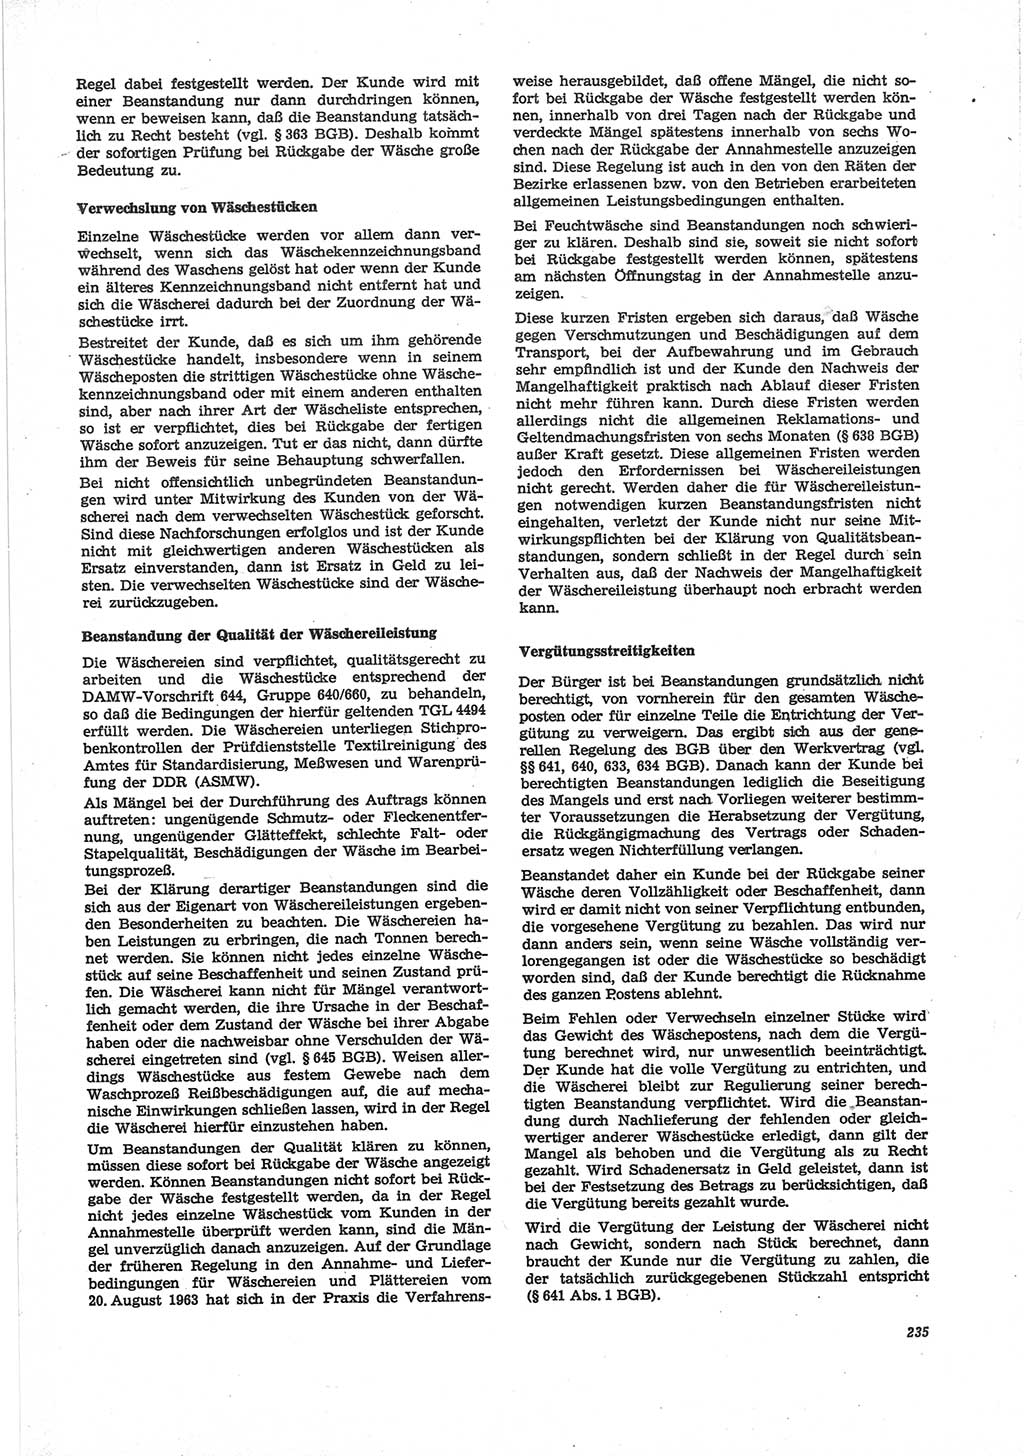 Neue Justiz (NJ), Zeitschrift für Recht und Rechtswissenschaft [Deutsche Demokratische Republik (DDR)], 28. Jahrgang 1974, Seite 235 (NJ DDR 1974, S. 235)